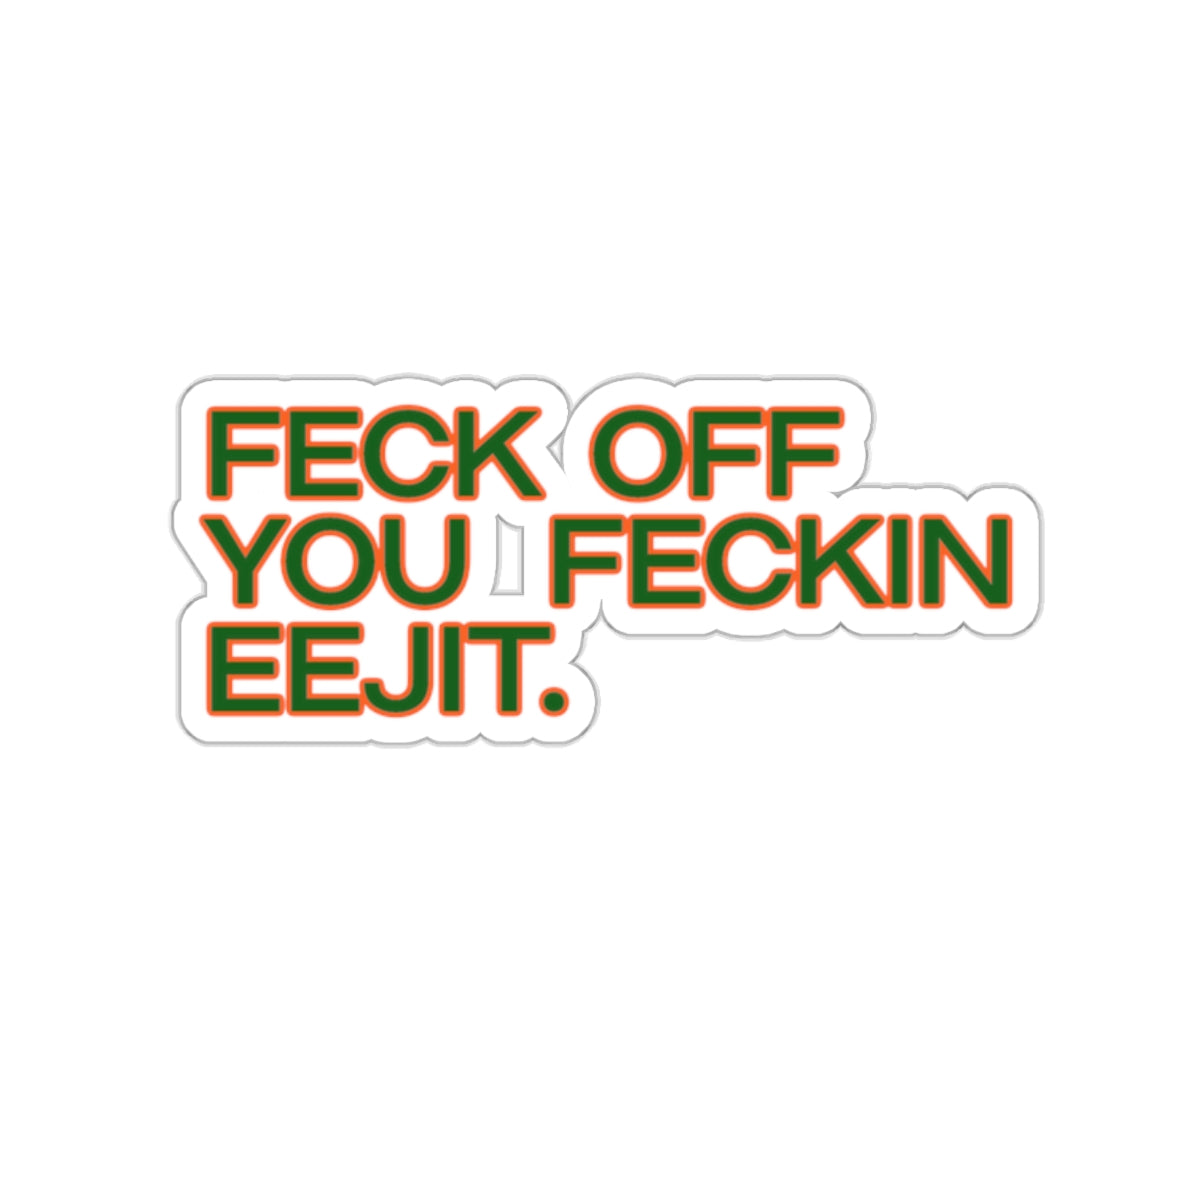 Feck Off You Feckin Edjit Sticker